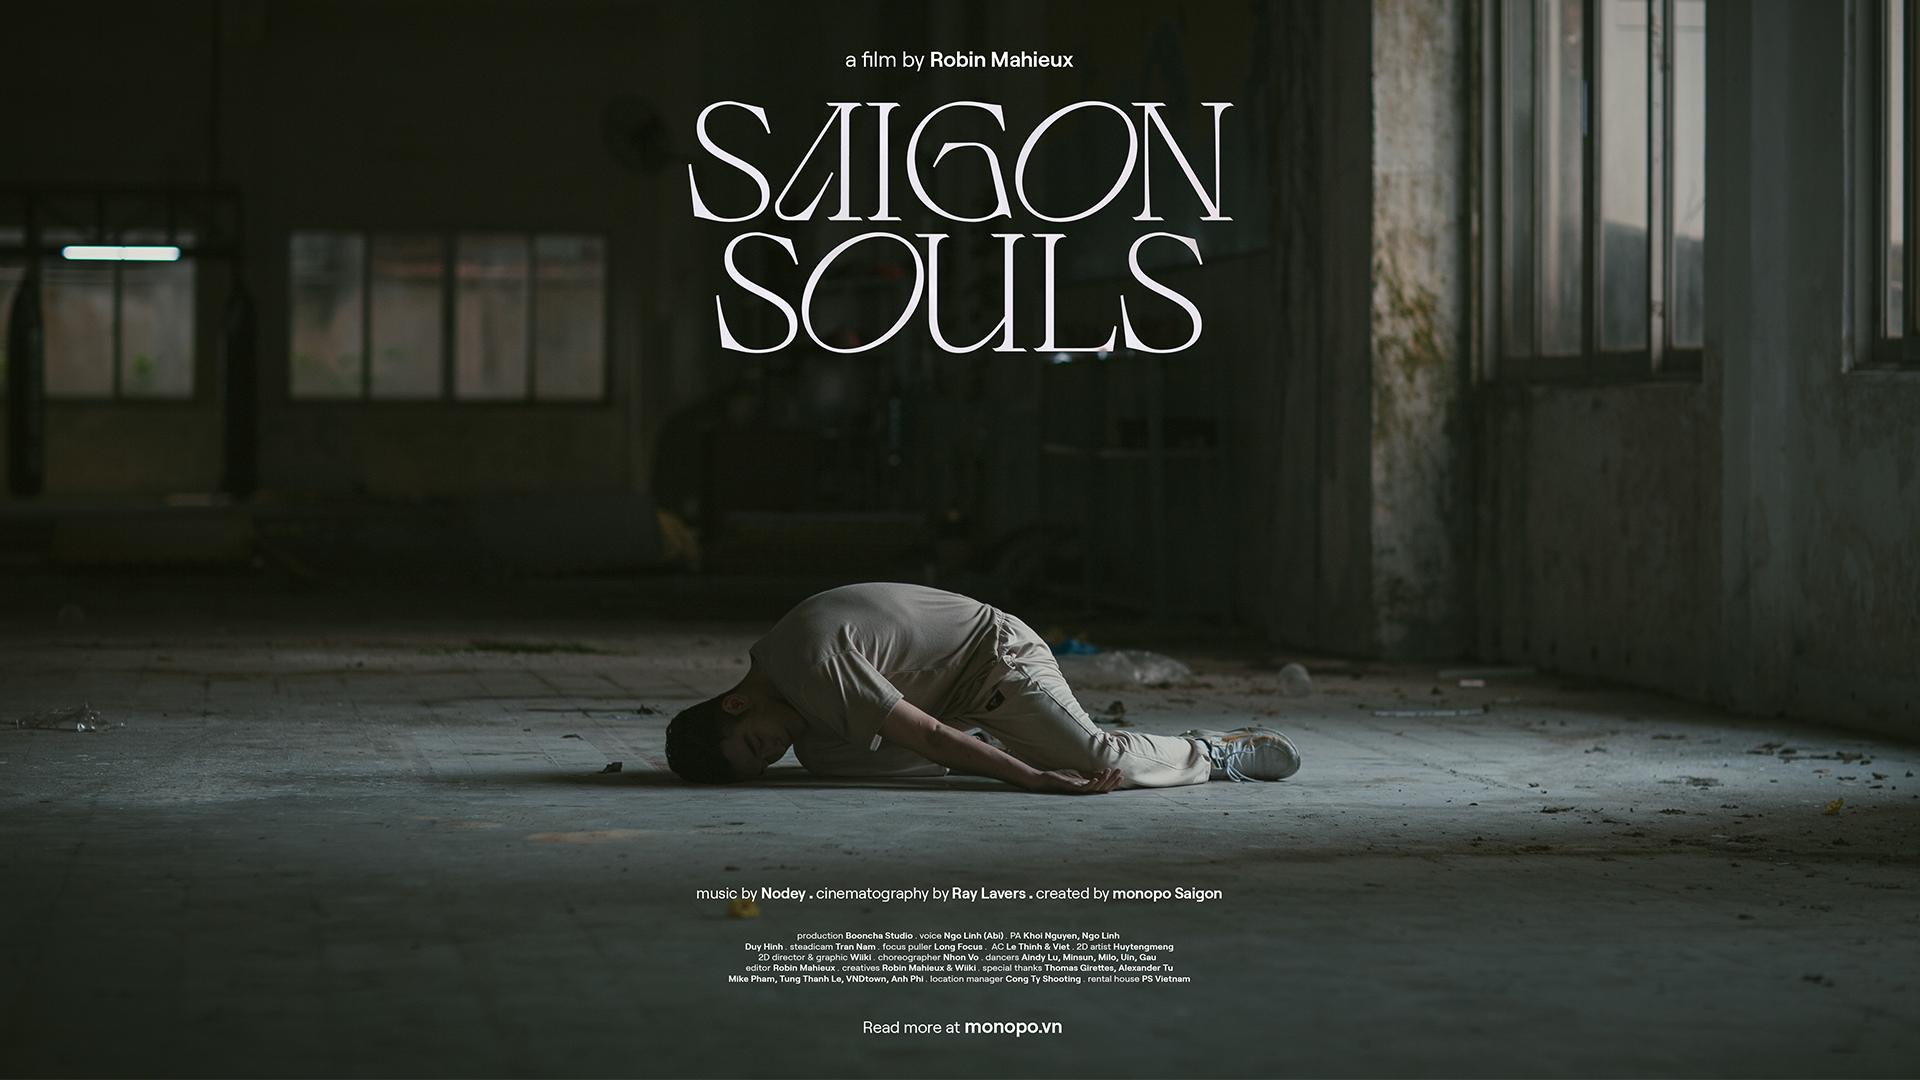 Saigon Souls